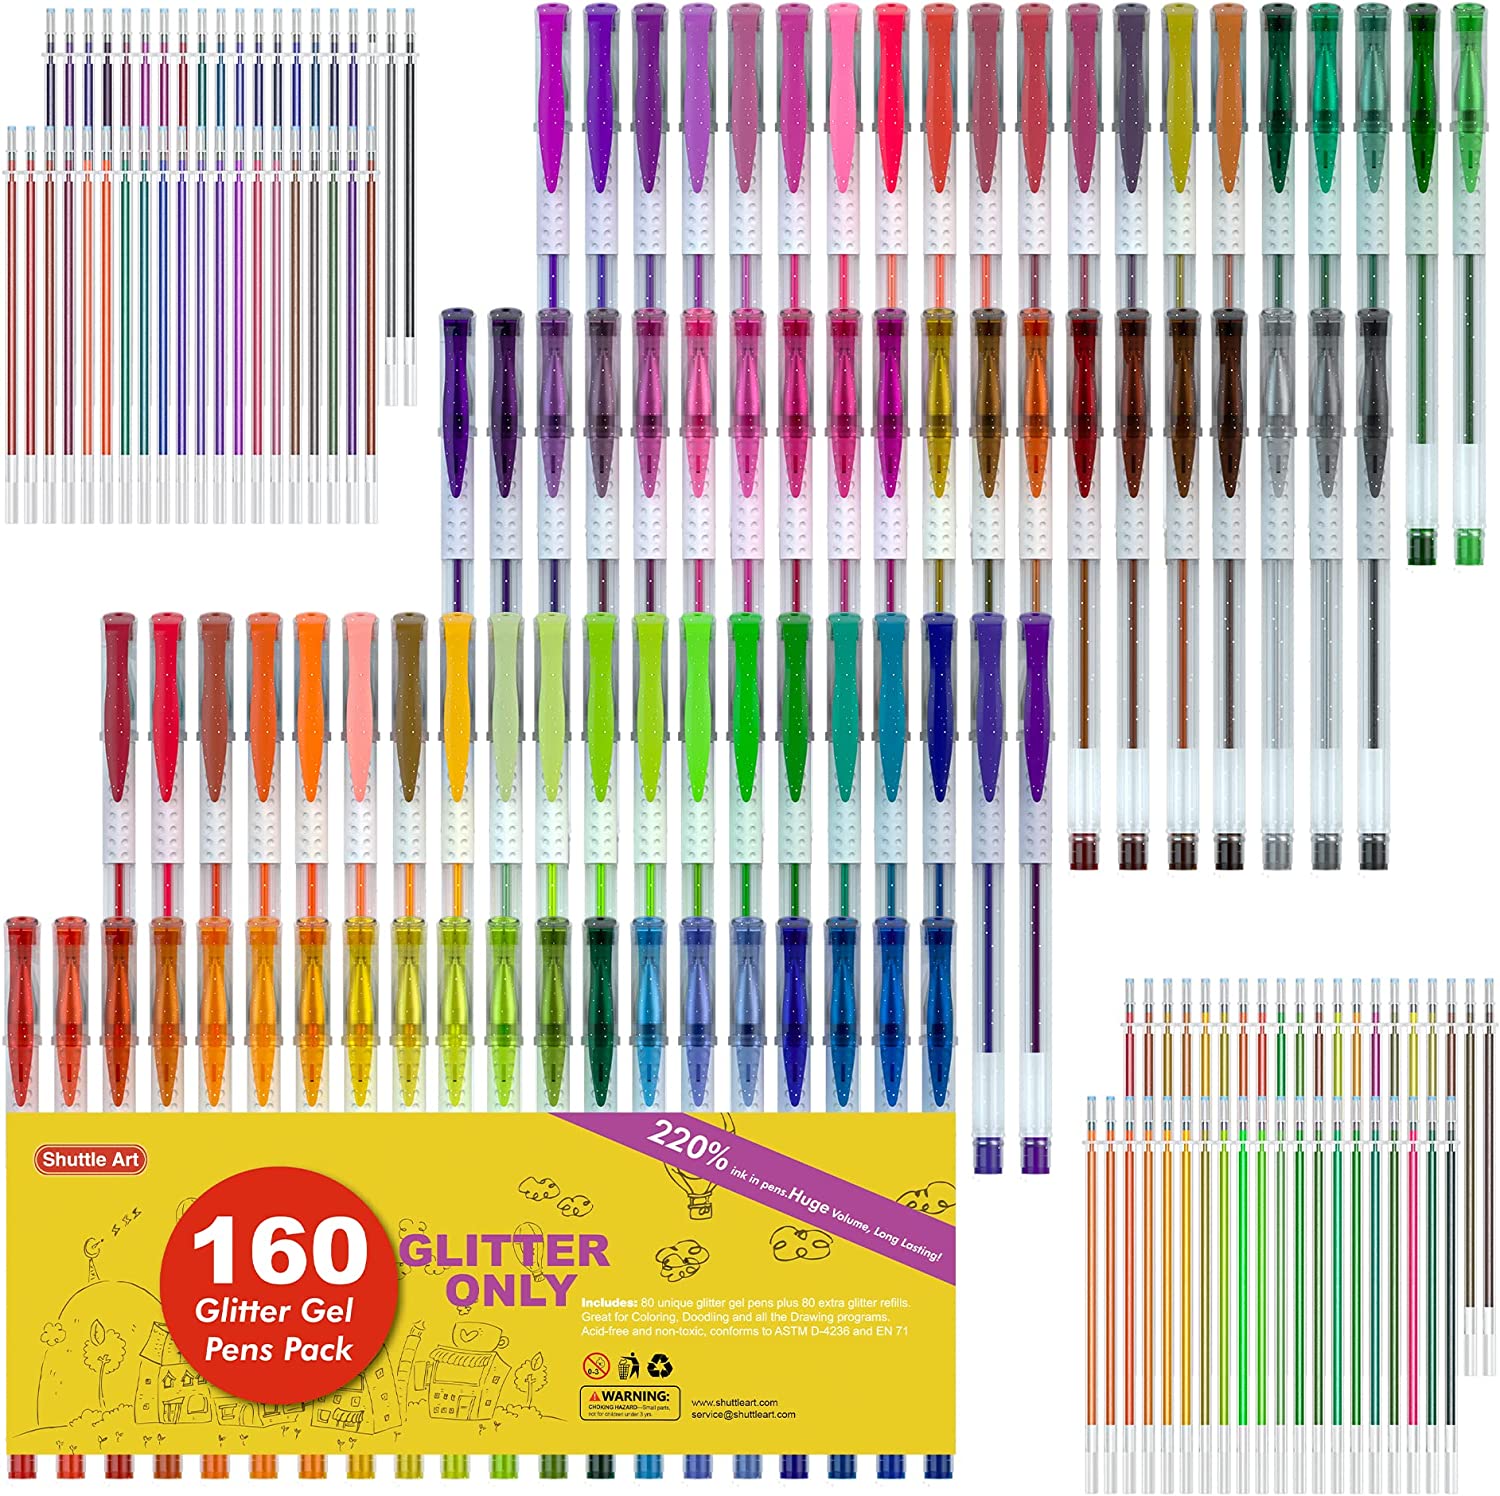 160 Pack Glitter Gel Pens Set, Shuttle Art 220% Ink Glitter Gel Pen 80 Colored Gel Pens Plus 80 Refills for Adult Coloring Books Craft Doodling - image 1 of 8